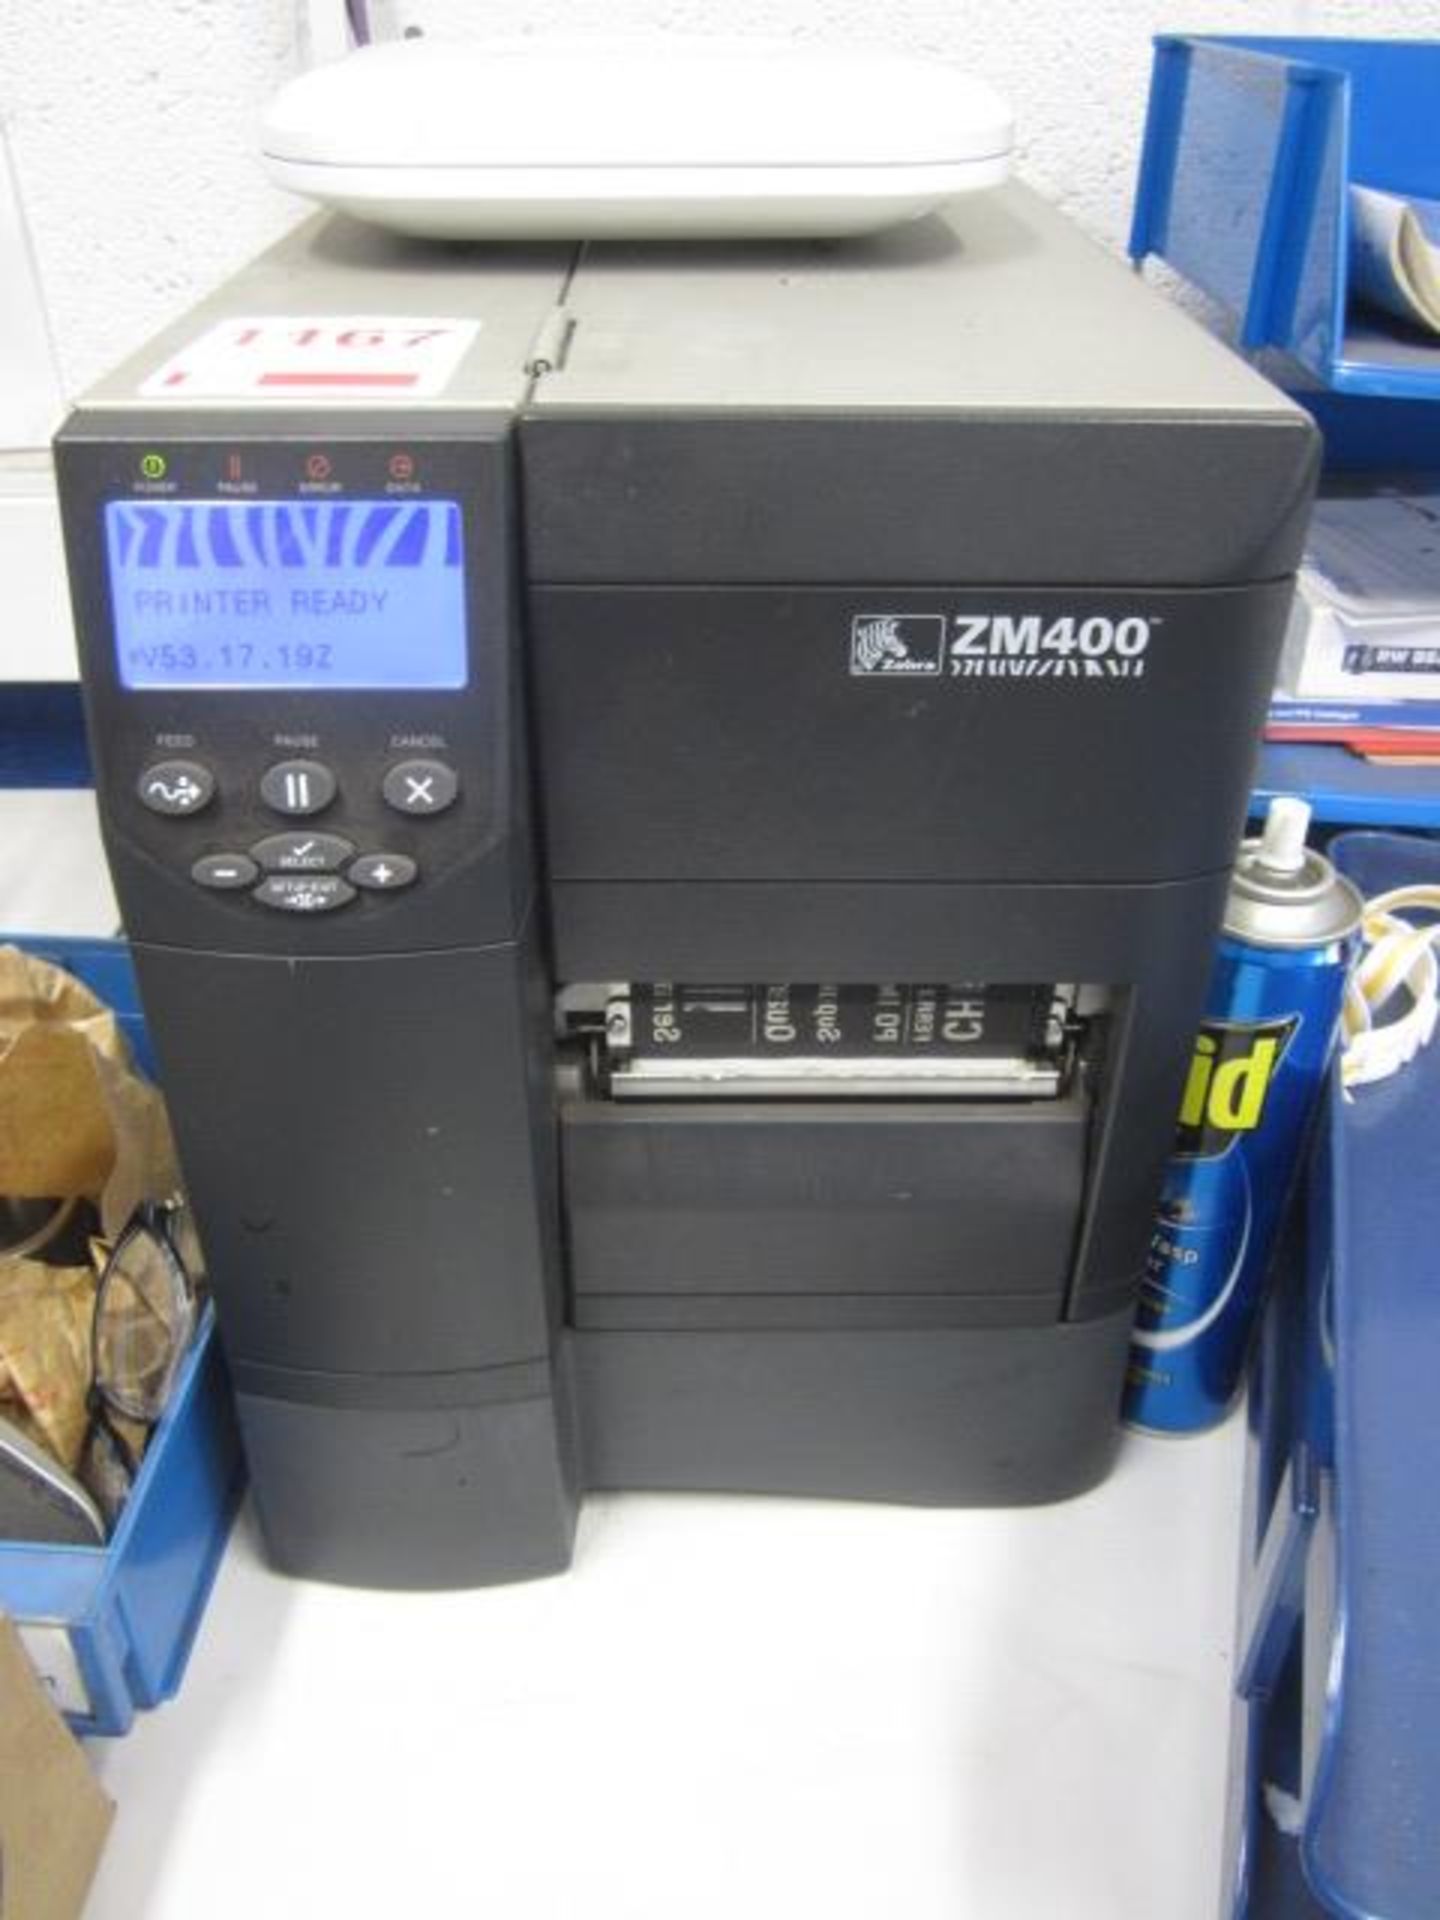 Zebra ZM400 label printer